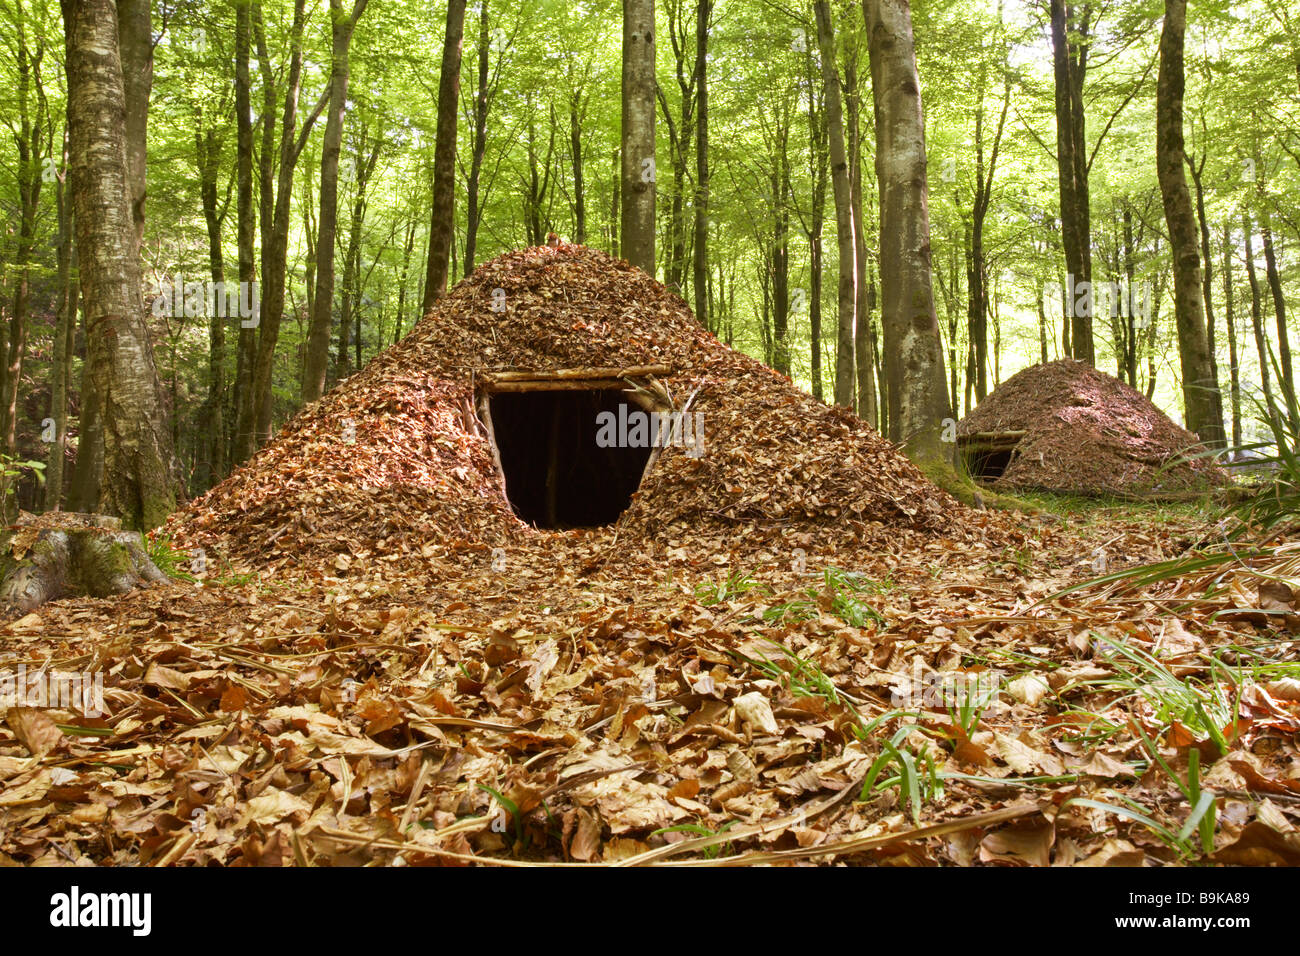 Leaf shelter in Dorset woods, England, UK Stock Photo